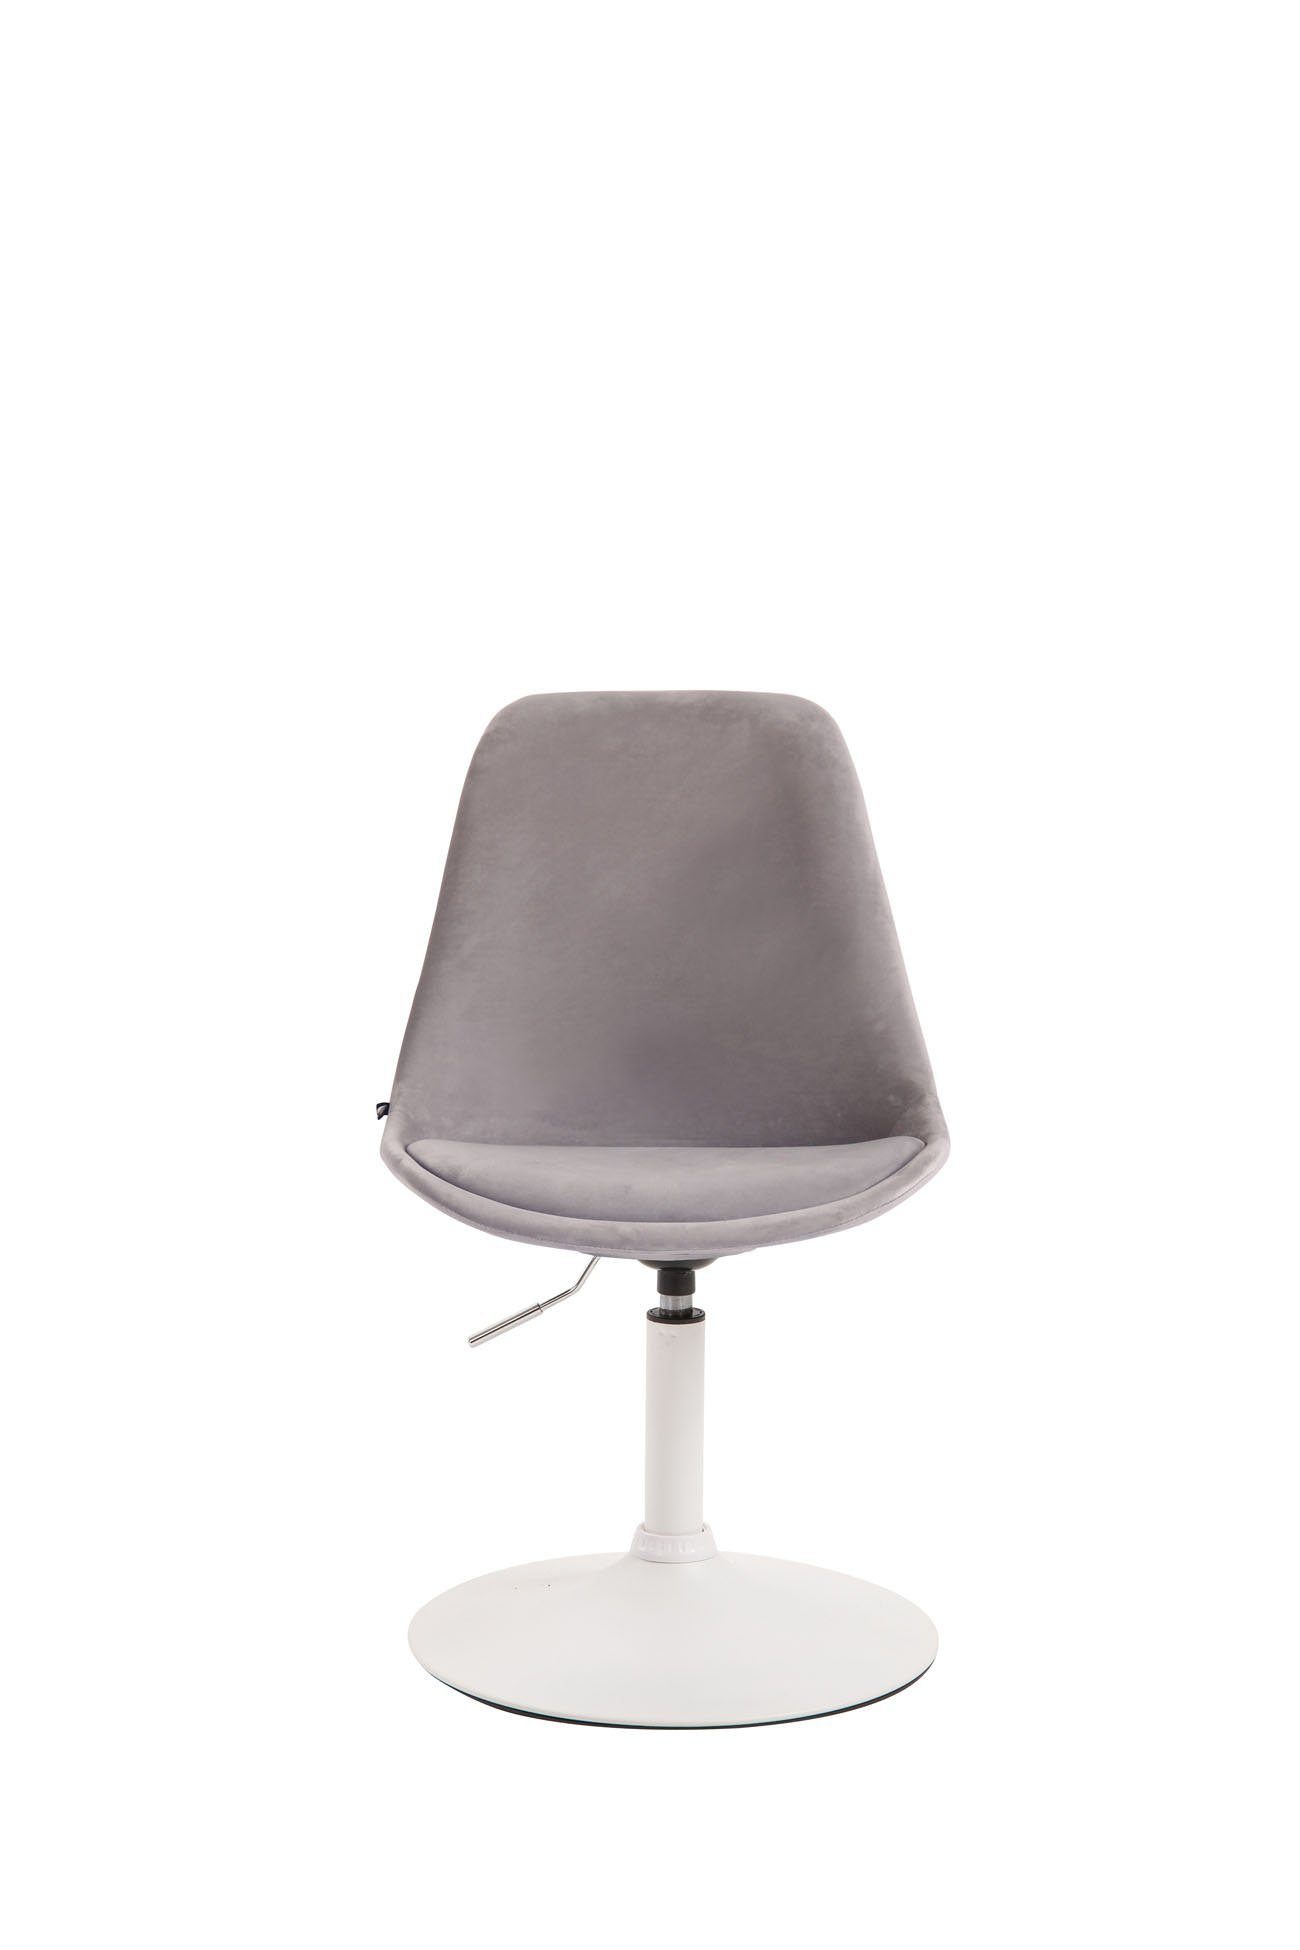 Samt Sitzfläche: - - weiß Metall Wohnzimmerstuhl Gestell: gepolsterter Mavic hochwertig - - - grau Sitzfläche Esstischstuhl TPFLiving mit Konferenzstuhl Polsterstuhl), Esszimmerstuhl (Küchenstuhl